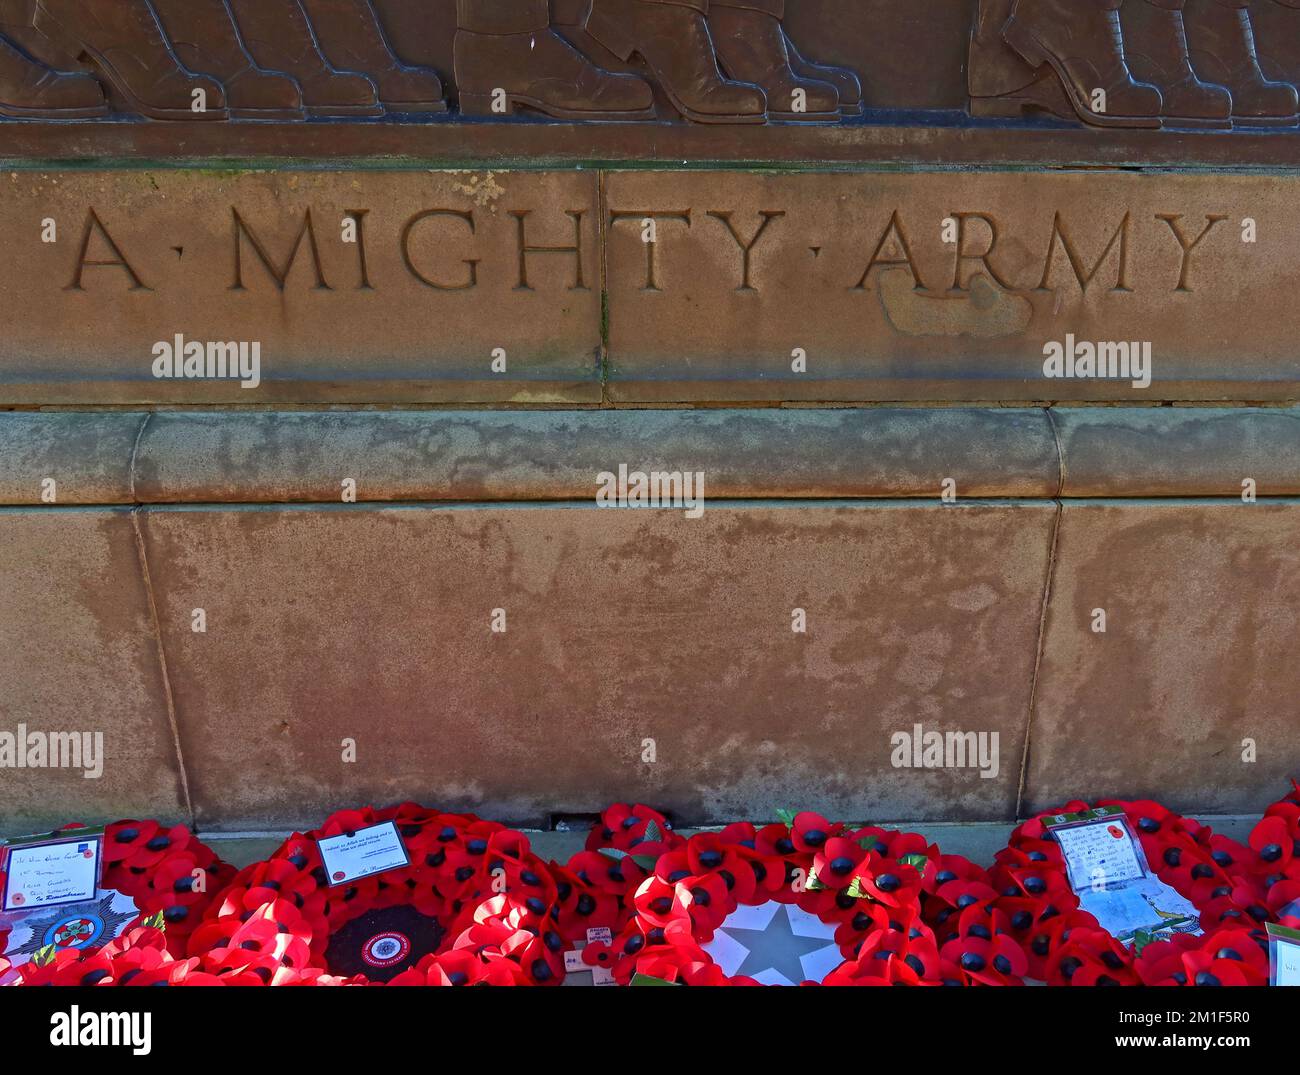 Une armée puissante - Liverpool St Georges cenotaph militaire, conçu par Lionel Budden, Lime Street, Liverpool, Angleterre, Royaume-Uni, L1 1JJ Banque D'Images